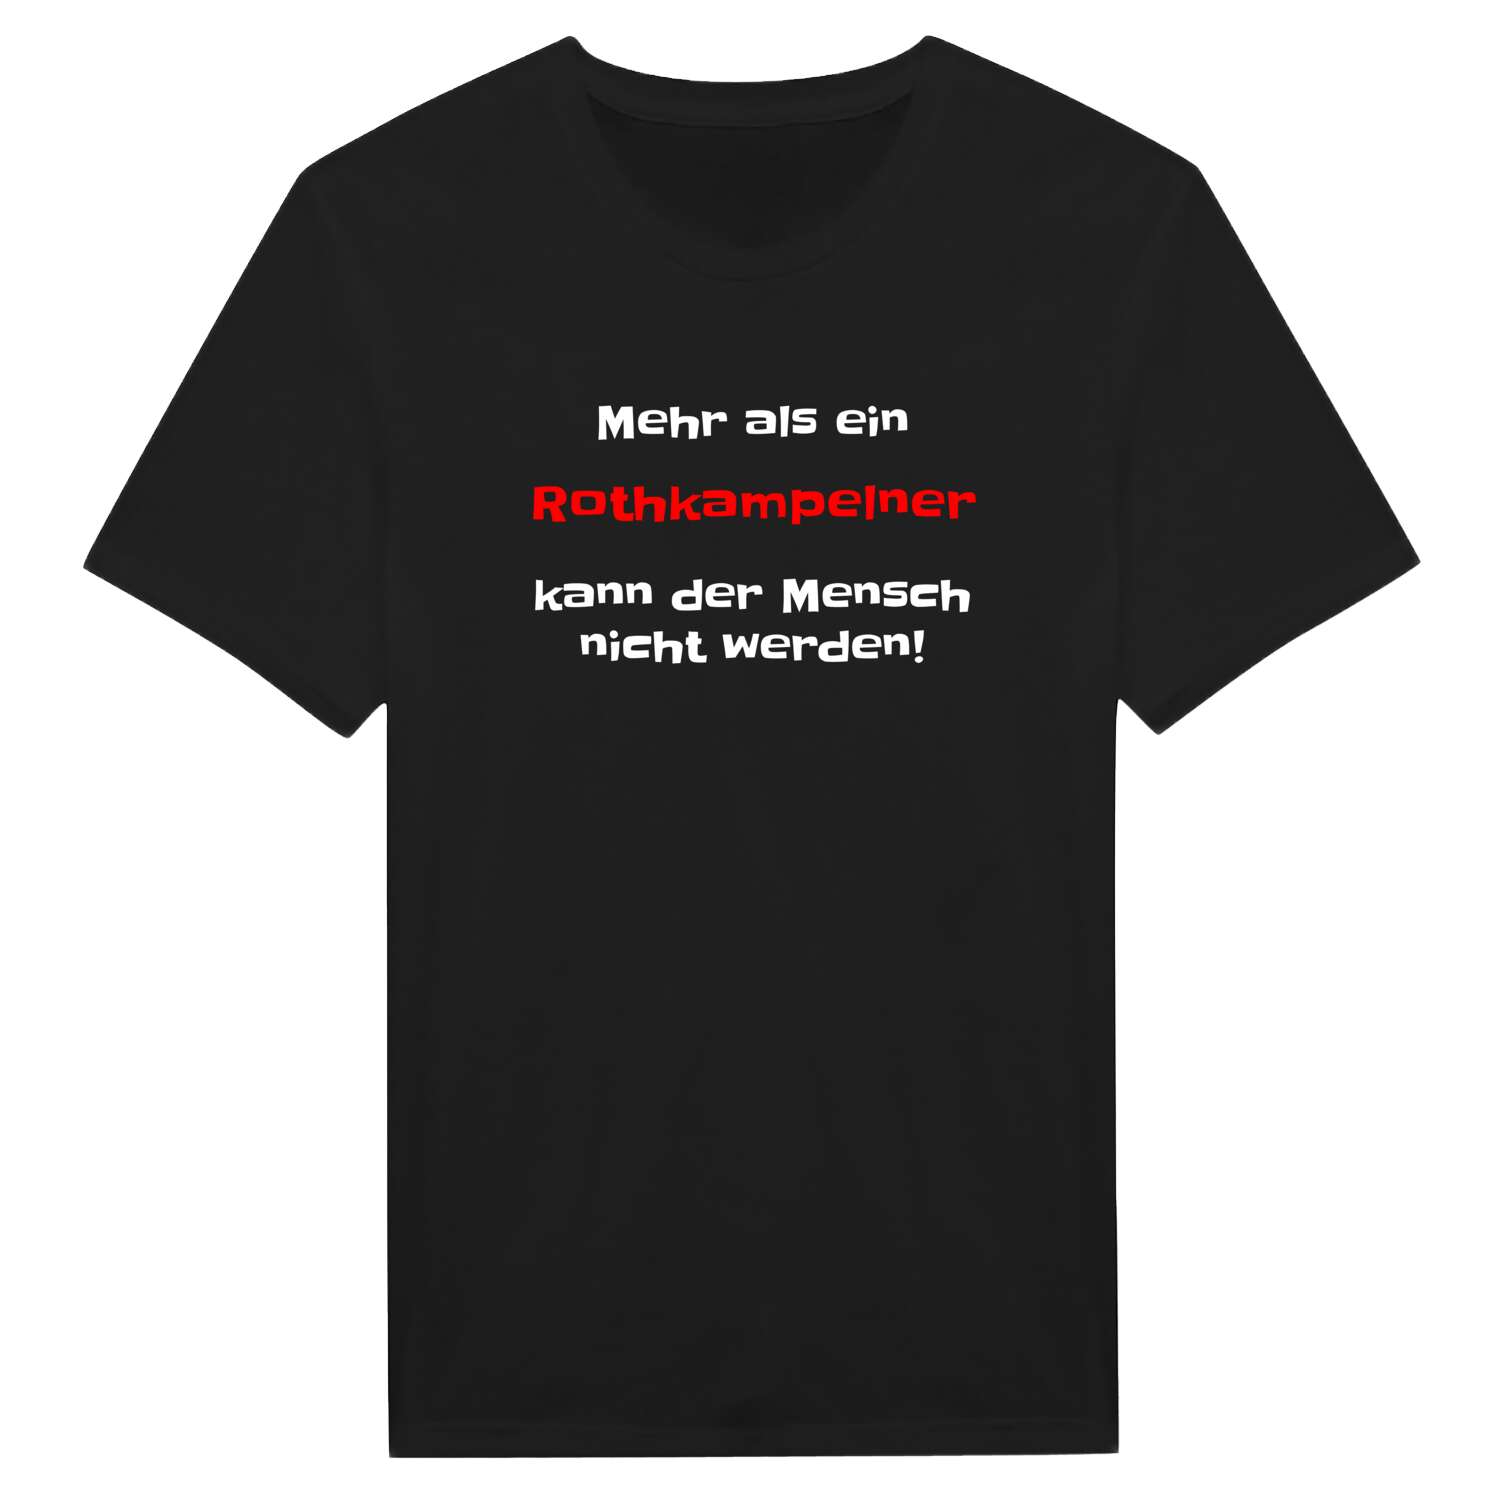 Rothkampeln T-Shirt »Mehr als ein«